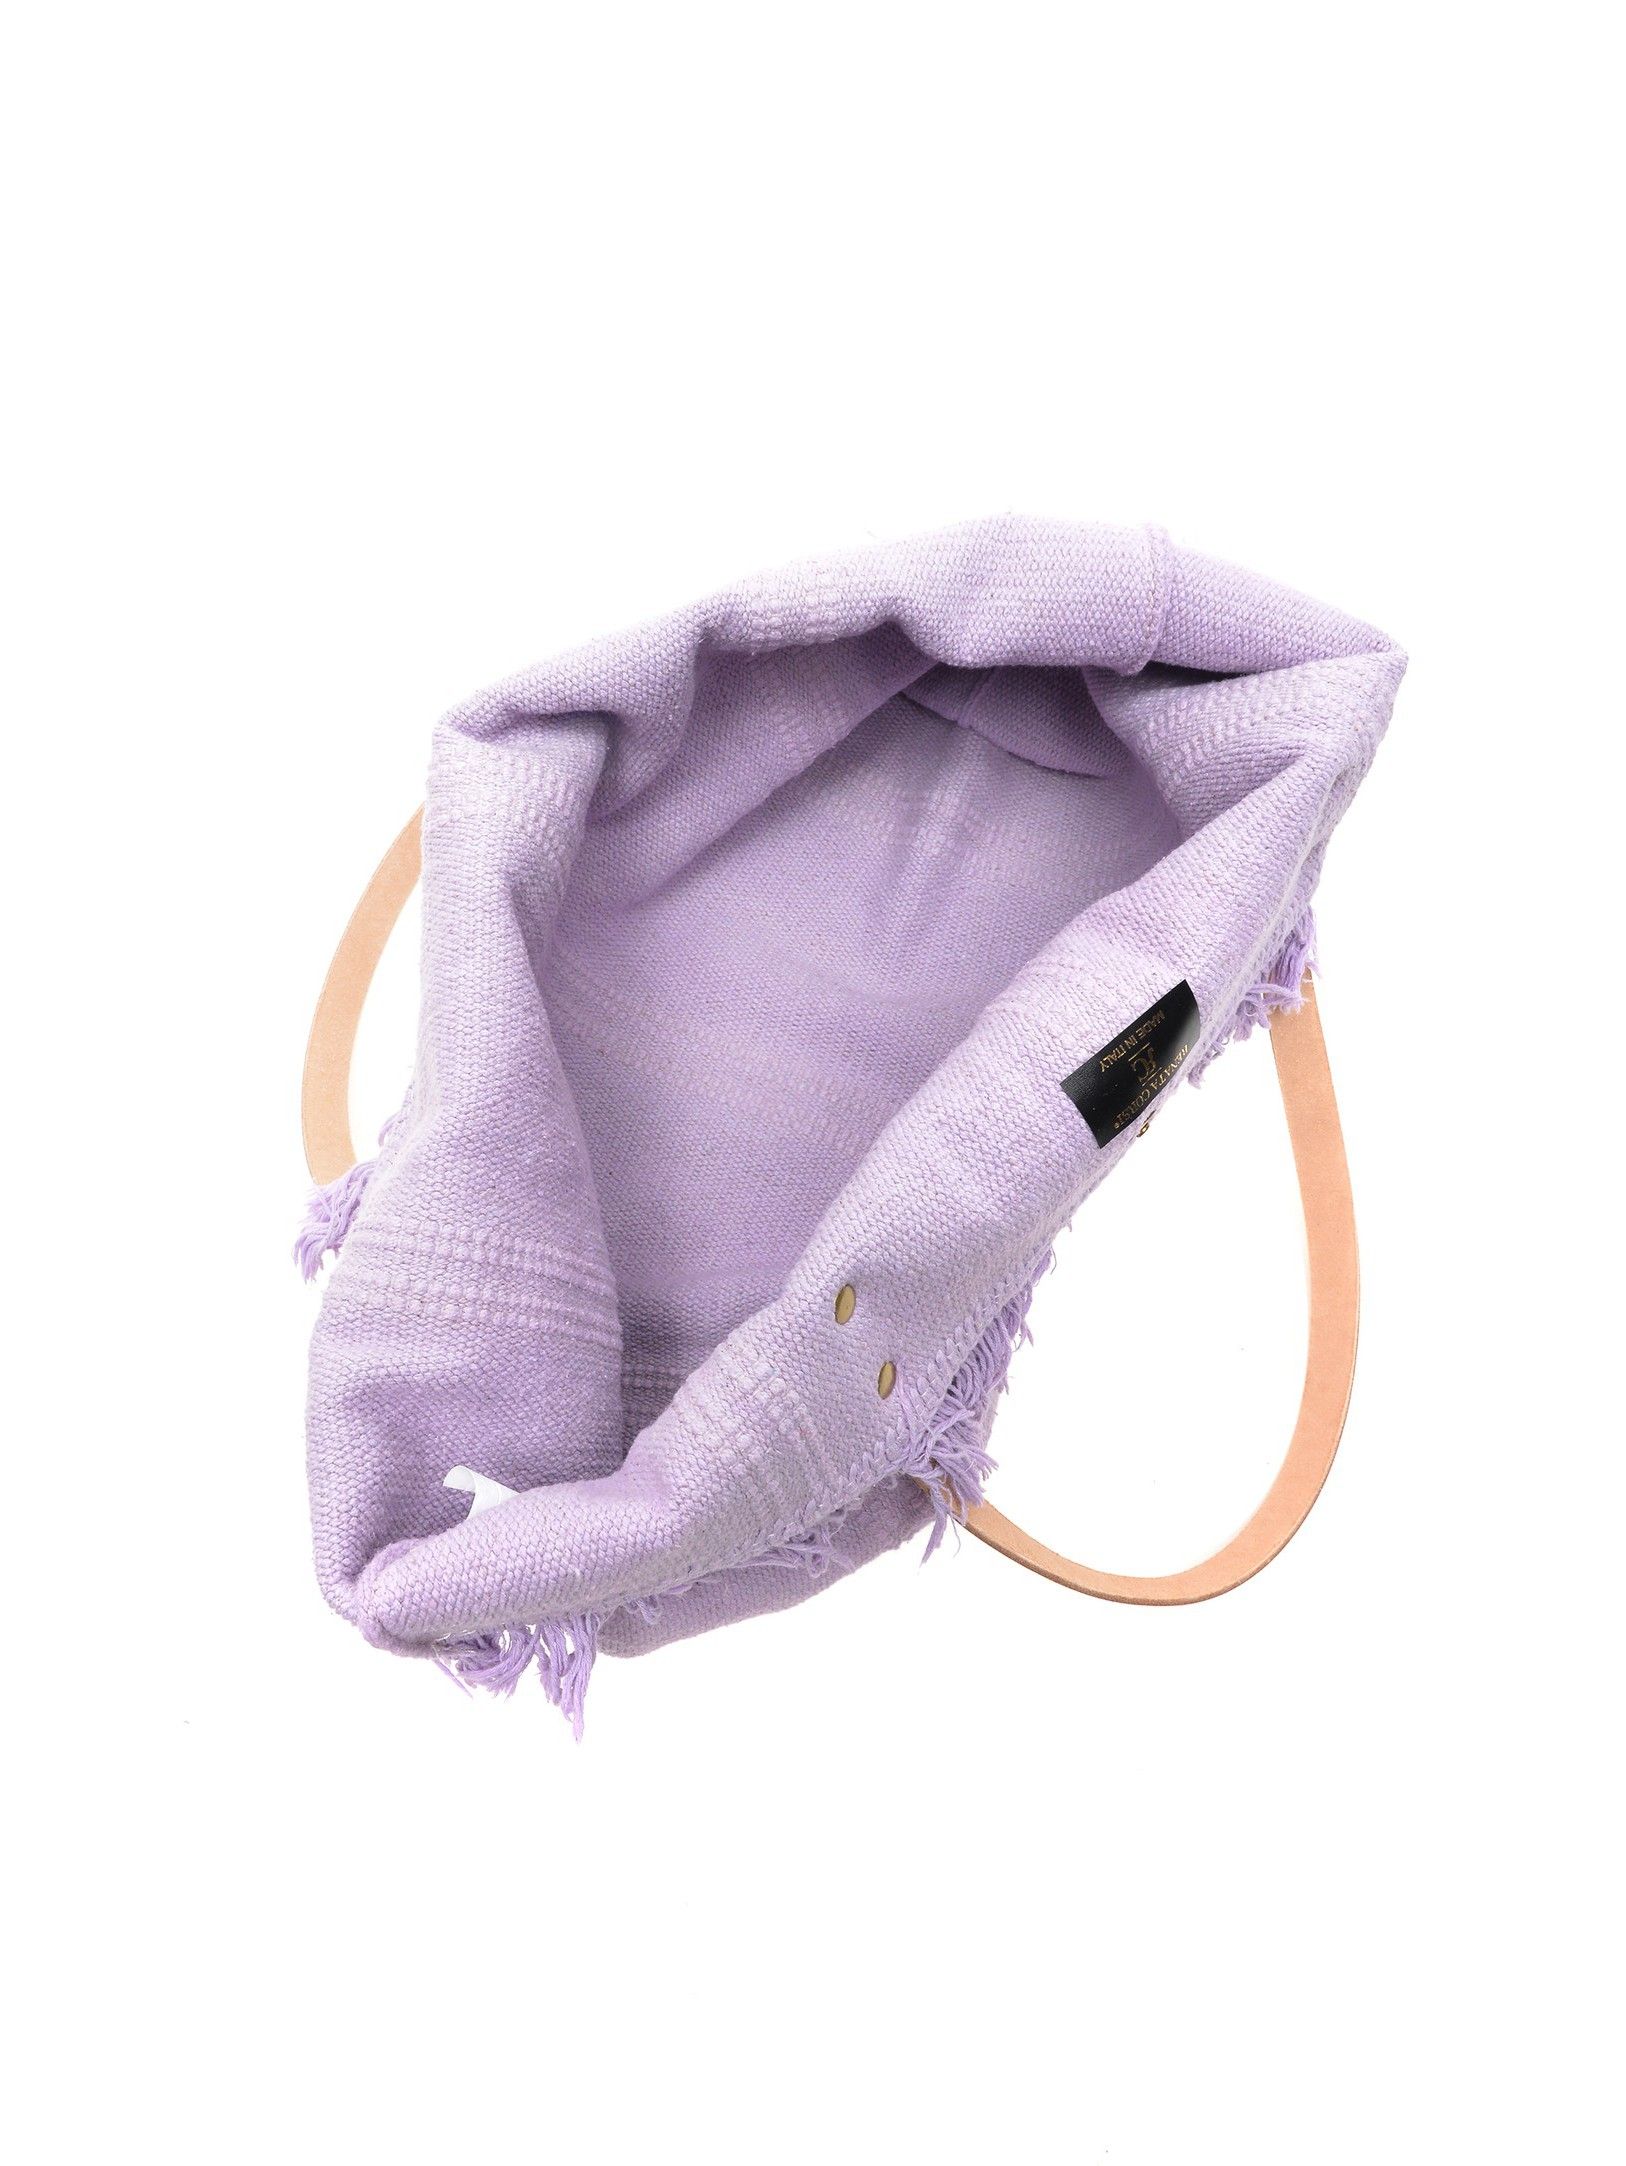 Tote Bag
100% cotton
Popper closure
Dimensions (L): 33x50x13 cm
Handle: 54 cm
Shoulder strap: / cm adjustable